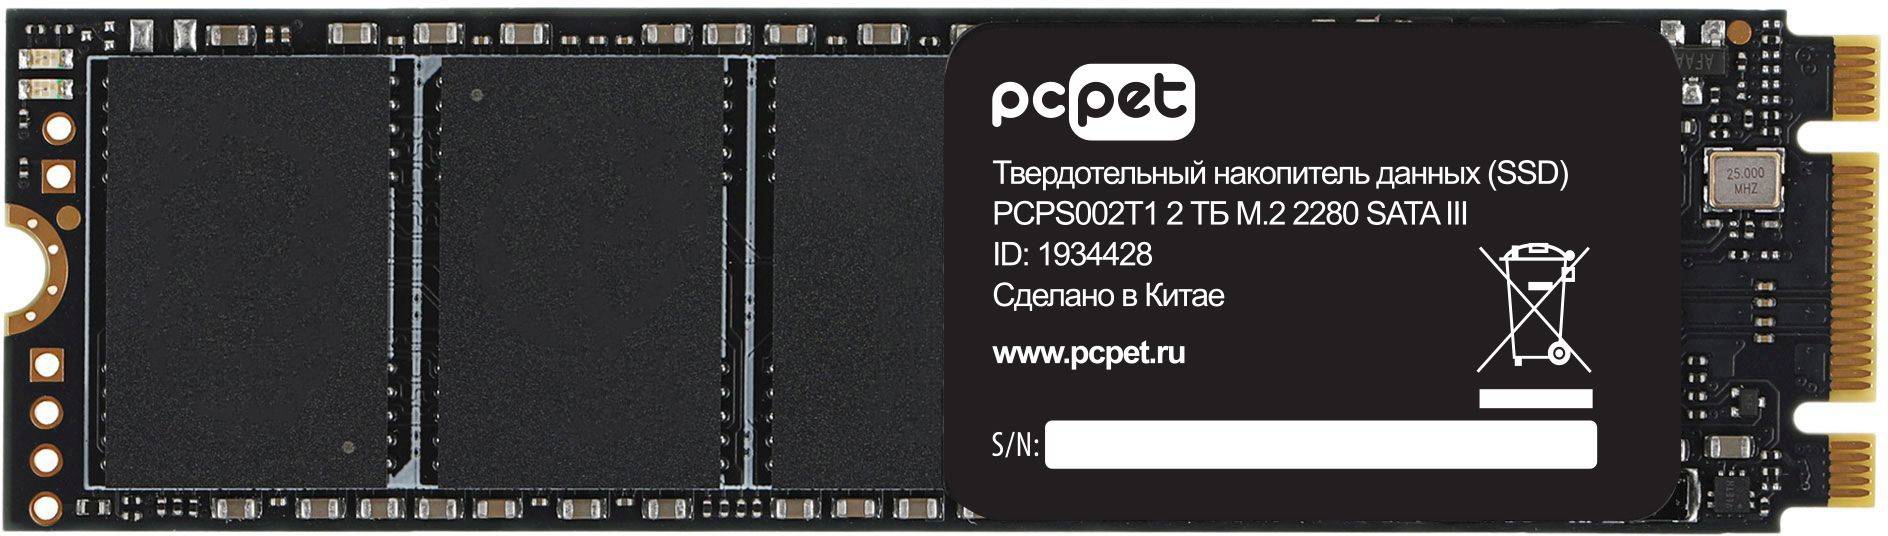 Твердотельный накопитель PC Pet 2048ГБ, M.2 2280, SATA III, M.2 PCPS002T1